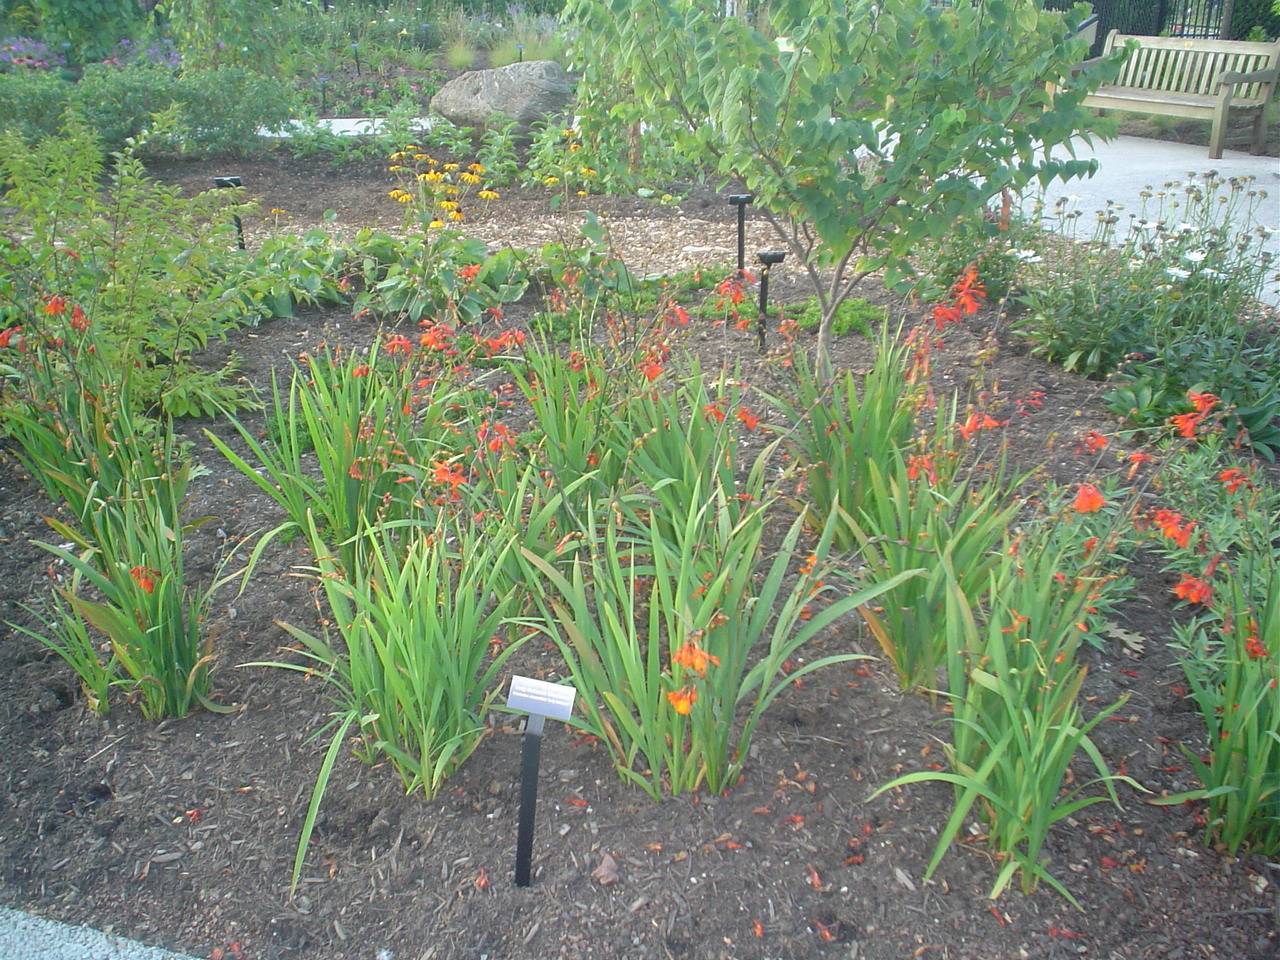 Гладиолусы: выращивание в саду, когда выкапывать и как хранить